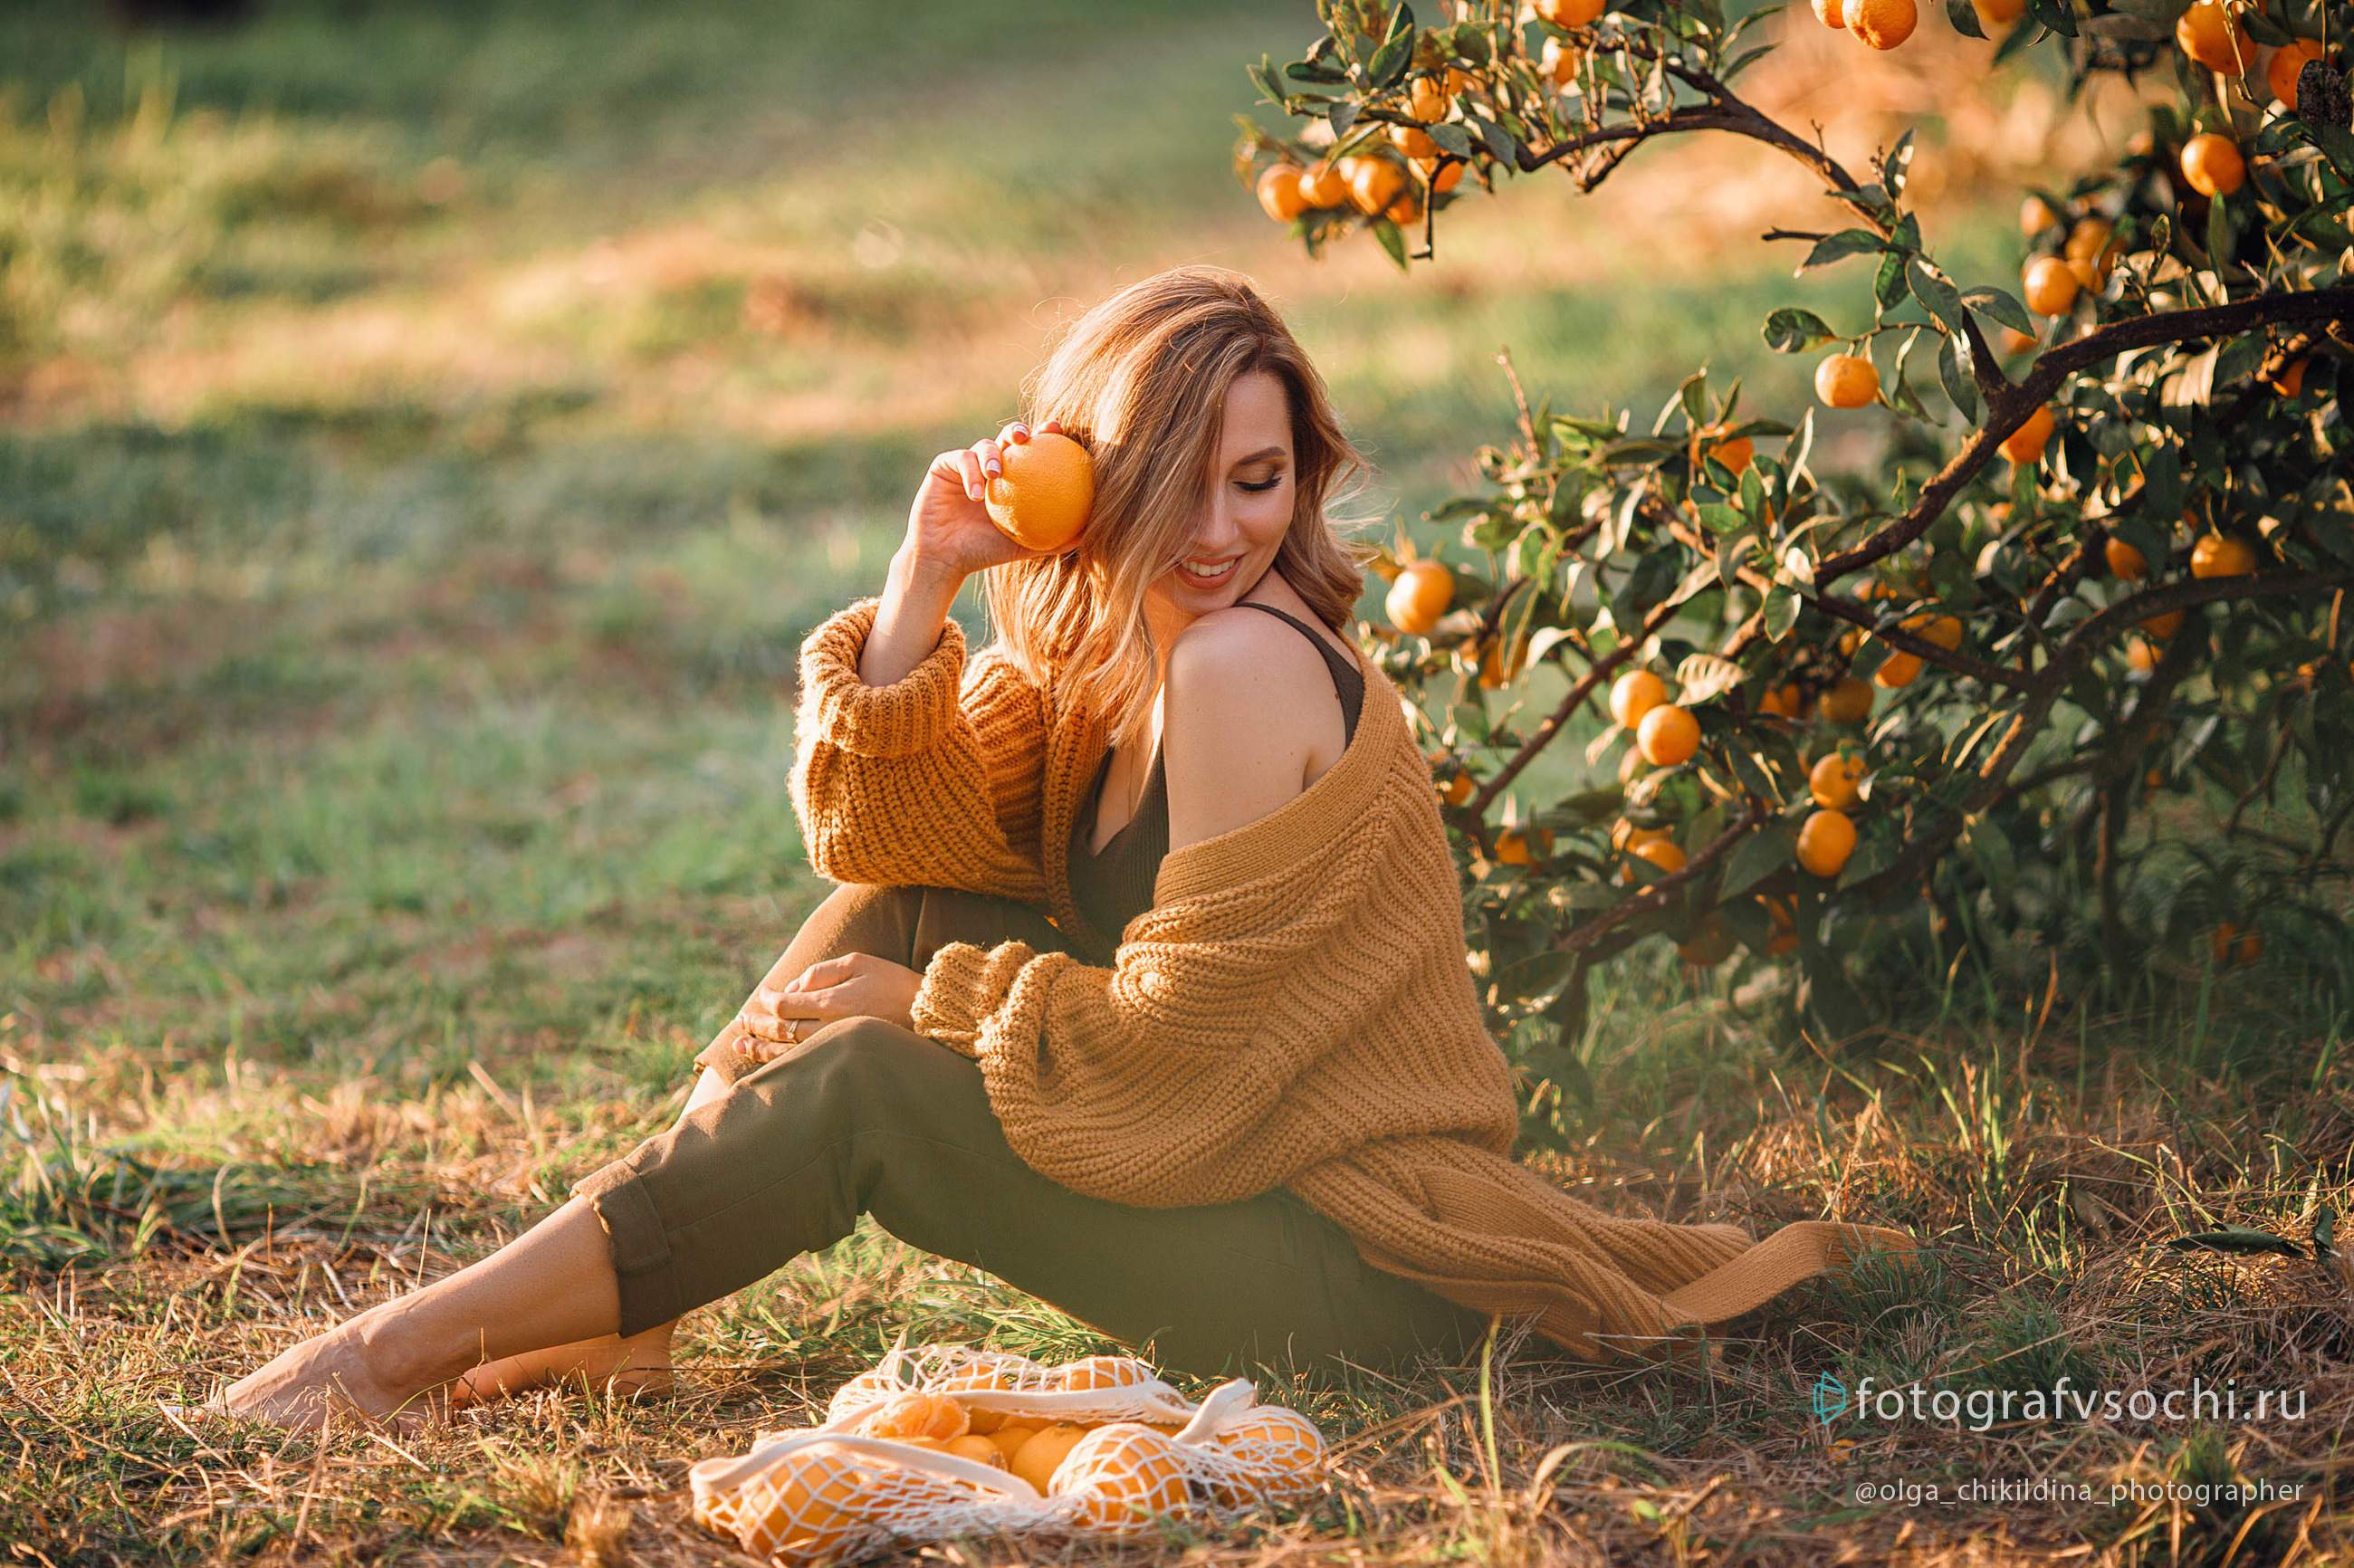 Цитрусовая фотосессия в мандариновом саду